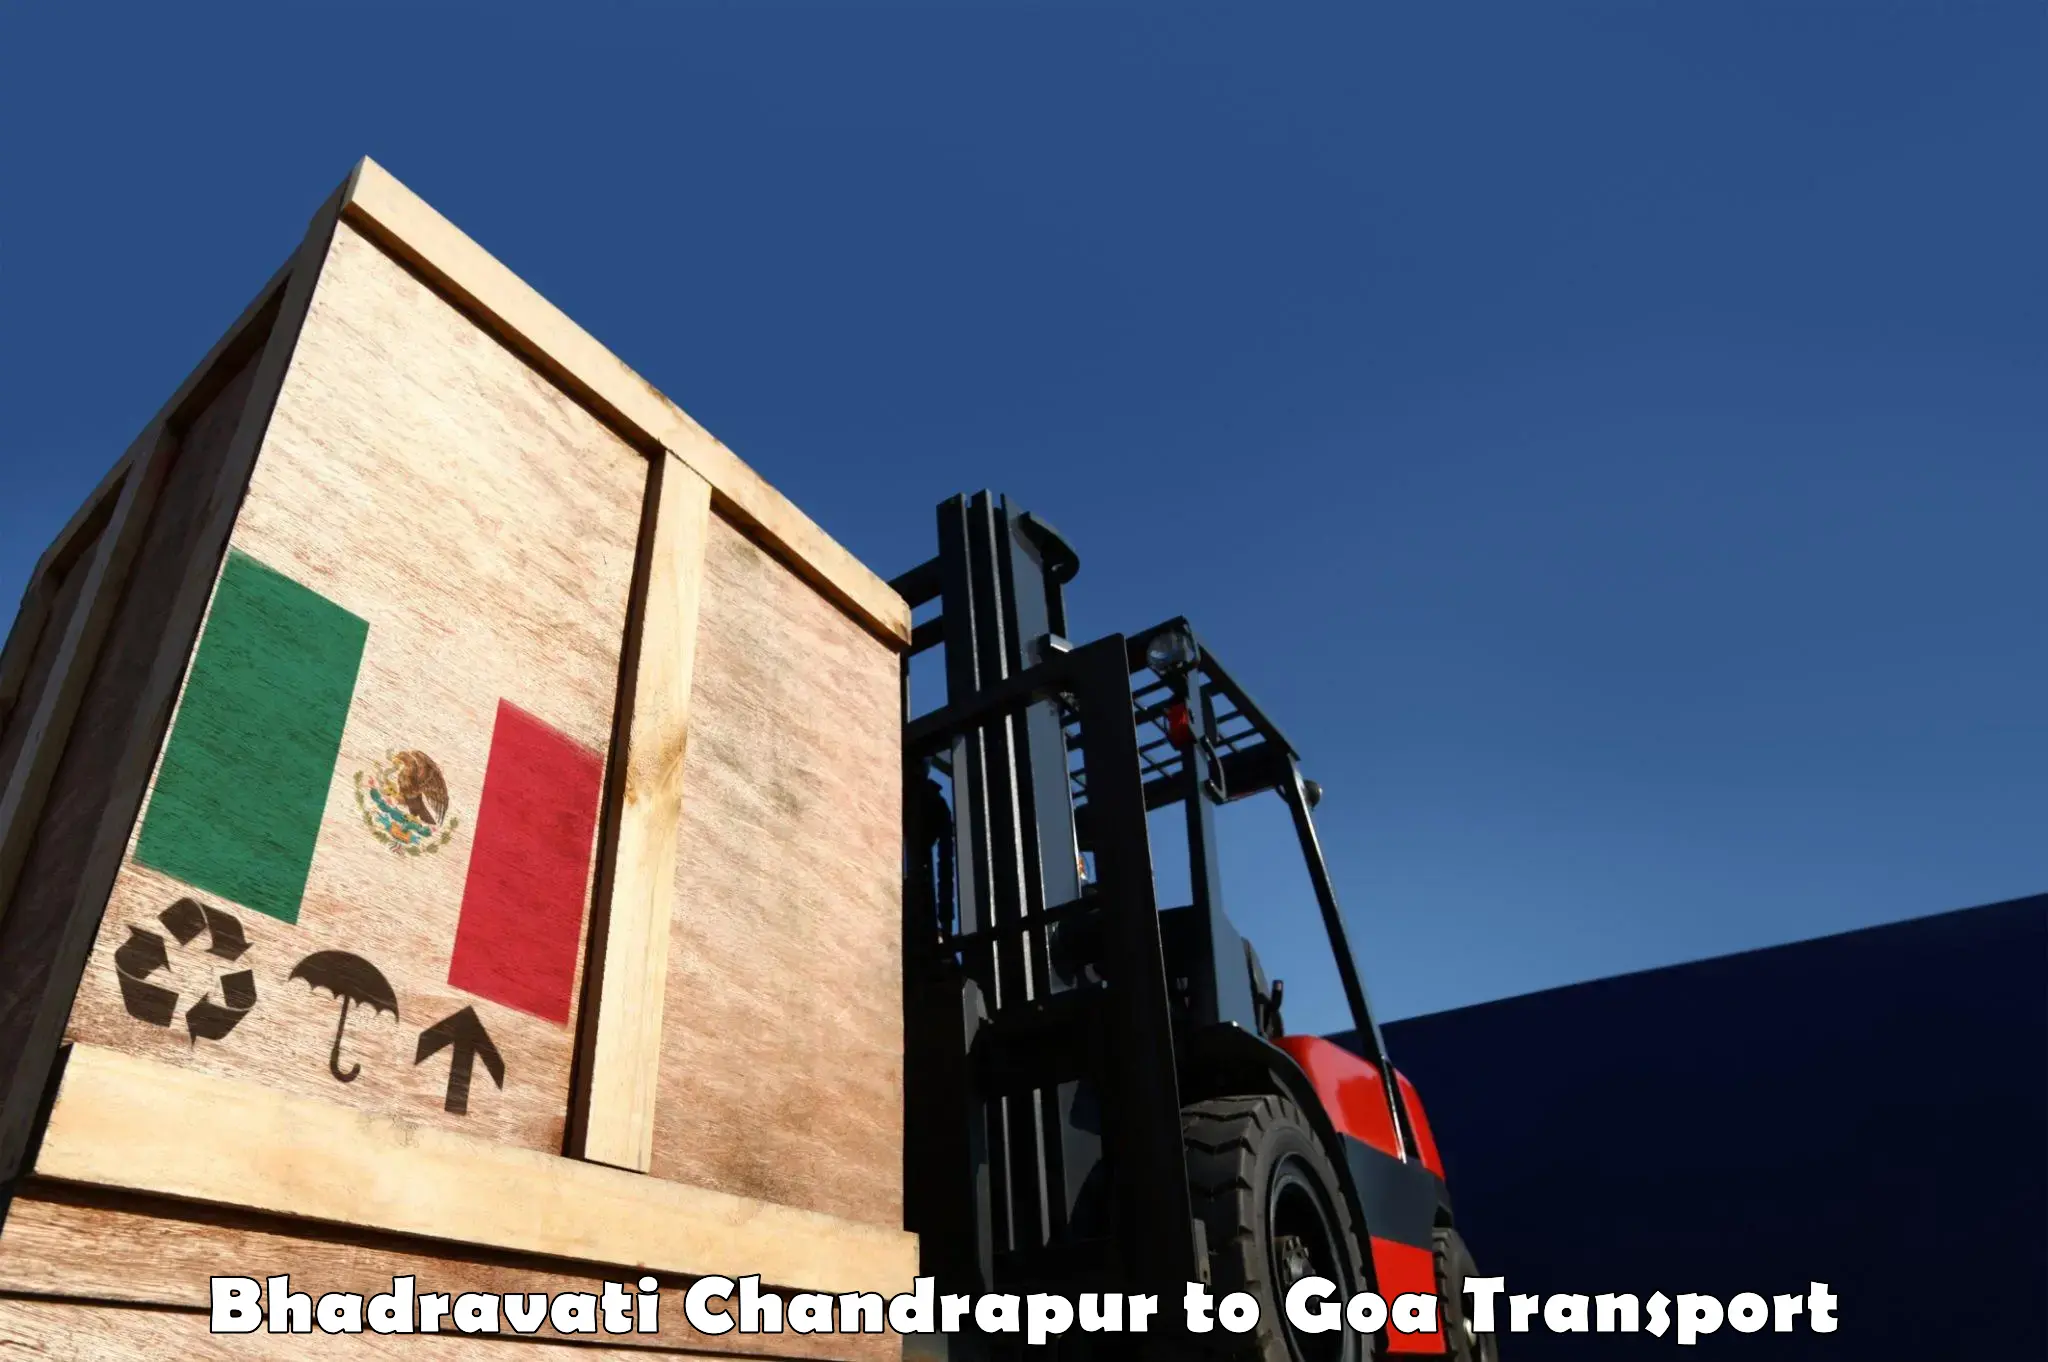 Truck transport companies in India in Bhadravati Chandrapur to Panaji